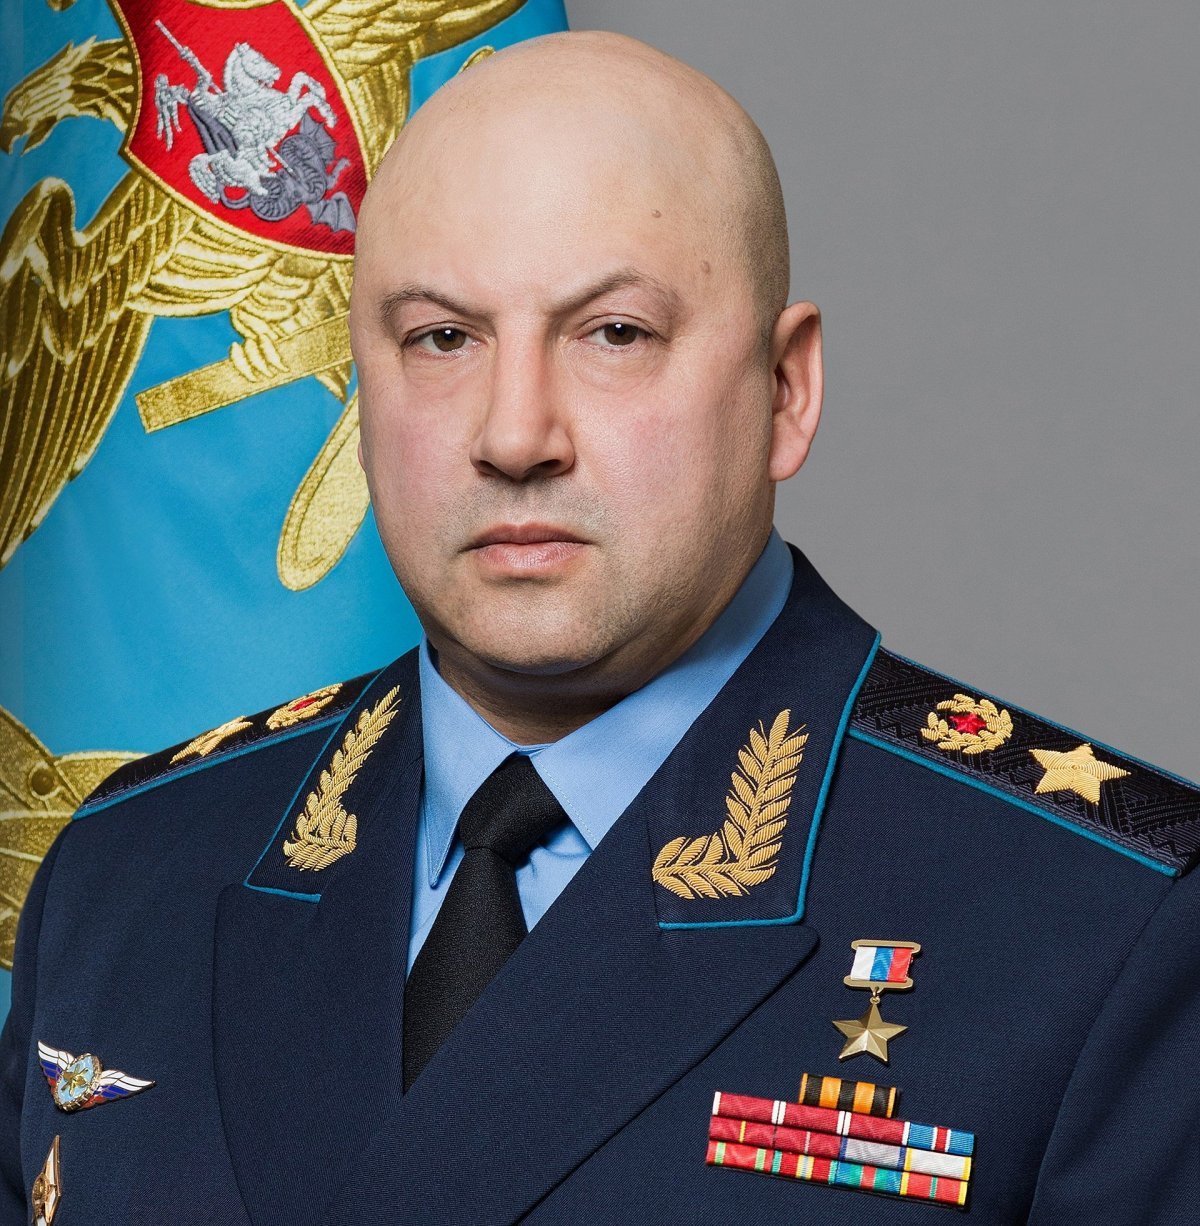 러시아 당국에 체포된 세르게이 수로비킨 현 러시아 항공우주군 총사령관(대장). @spectatorindex 트위터 캡처